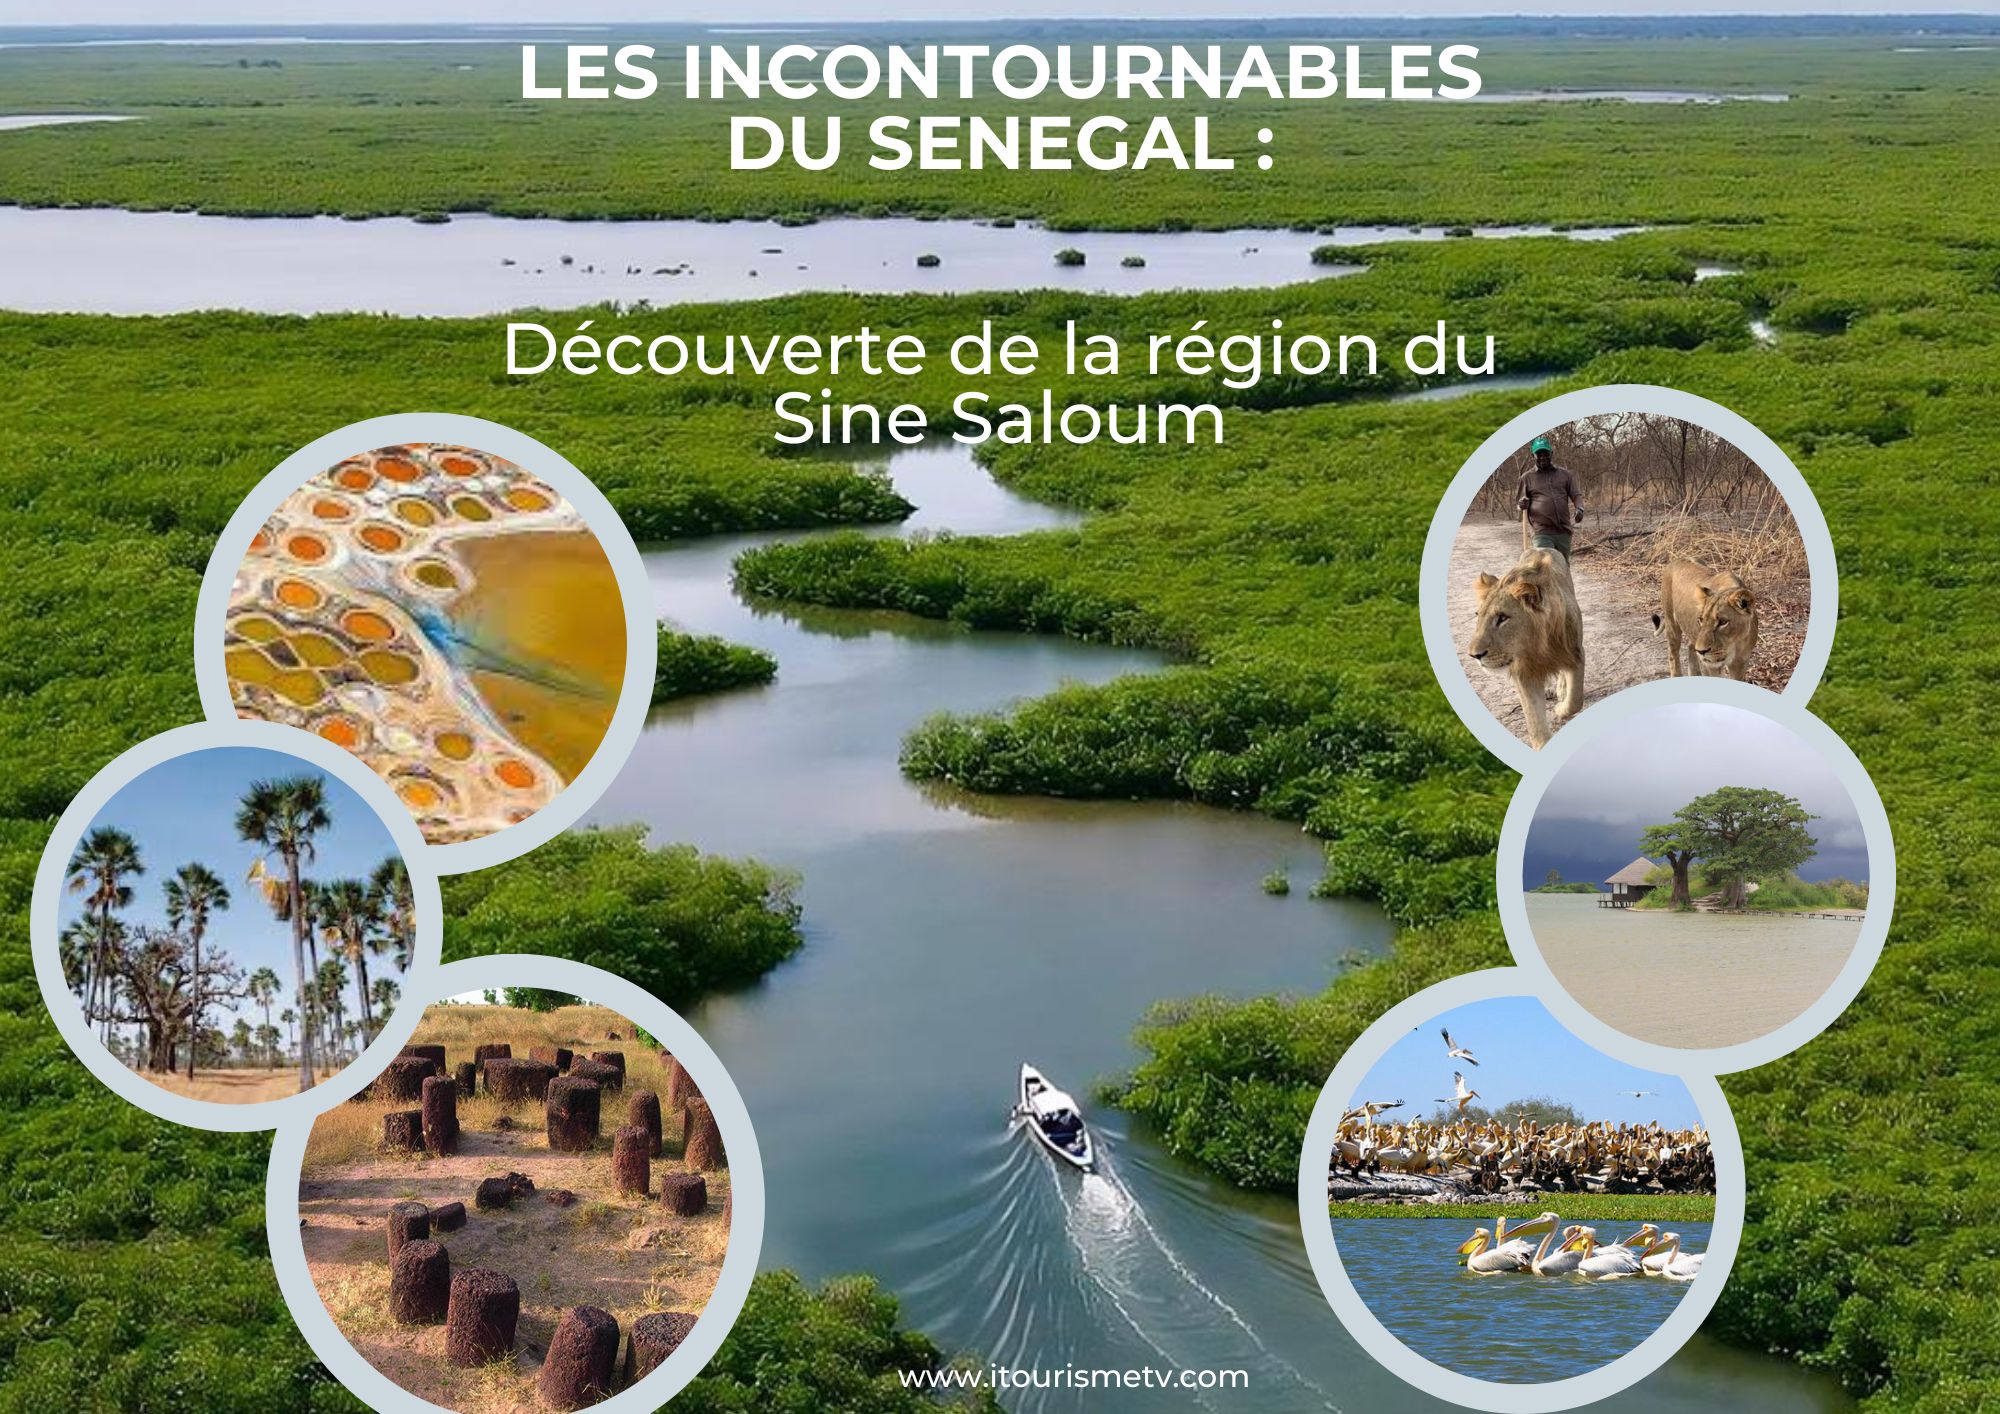 LES INCONTOURNABLES DU SENEGAL: Découverte de la région du Sine Saloum